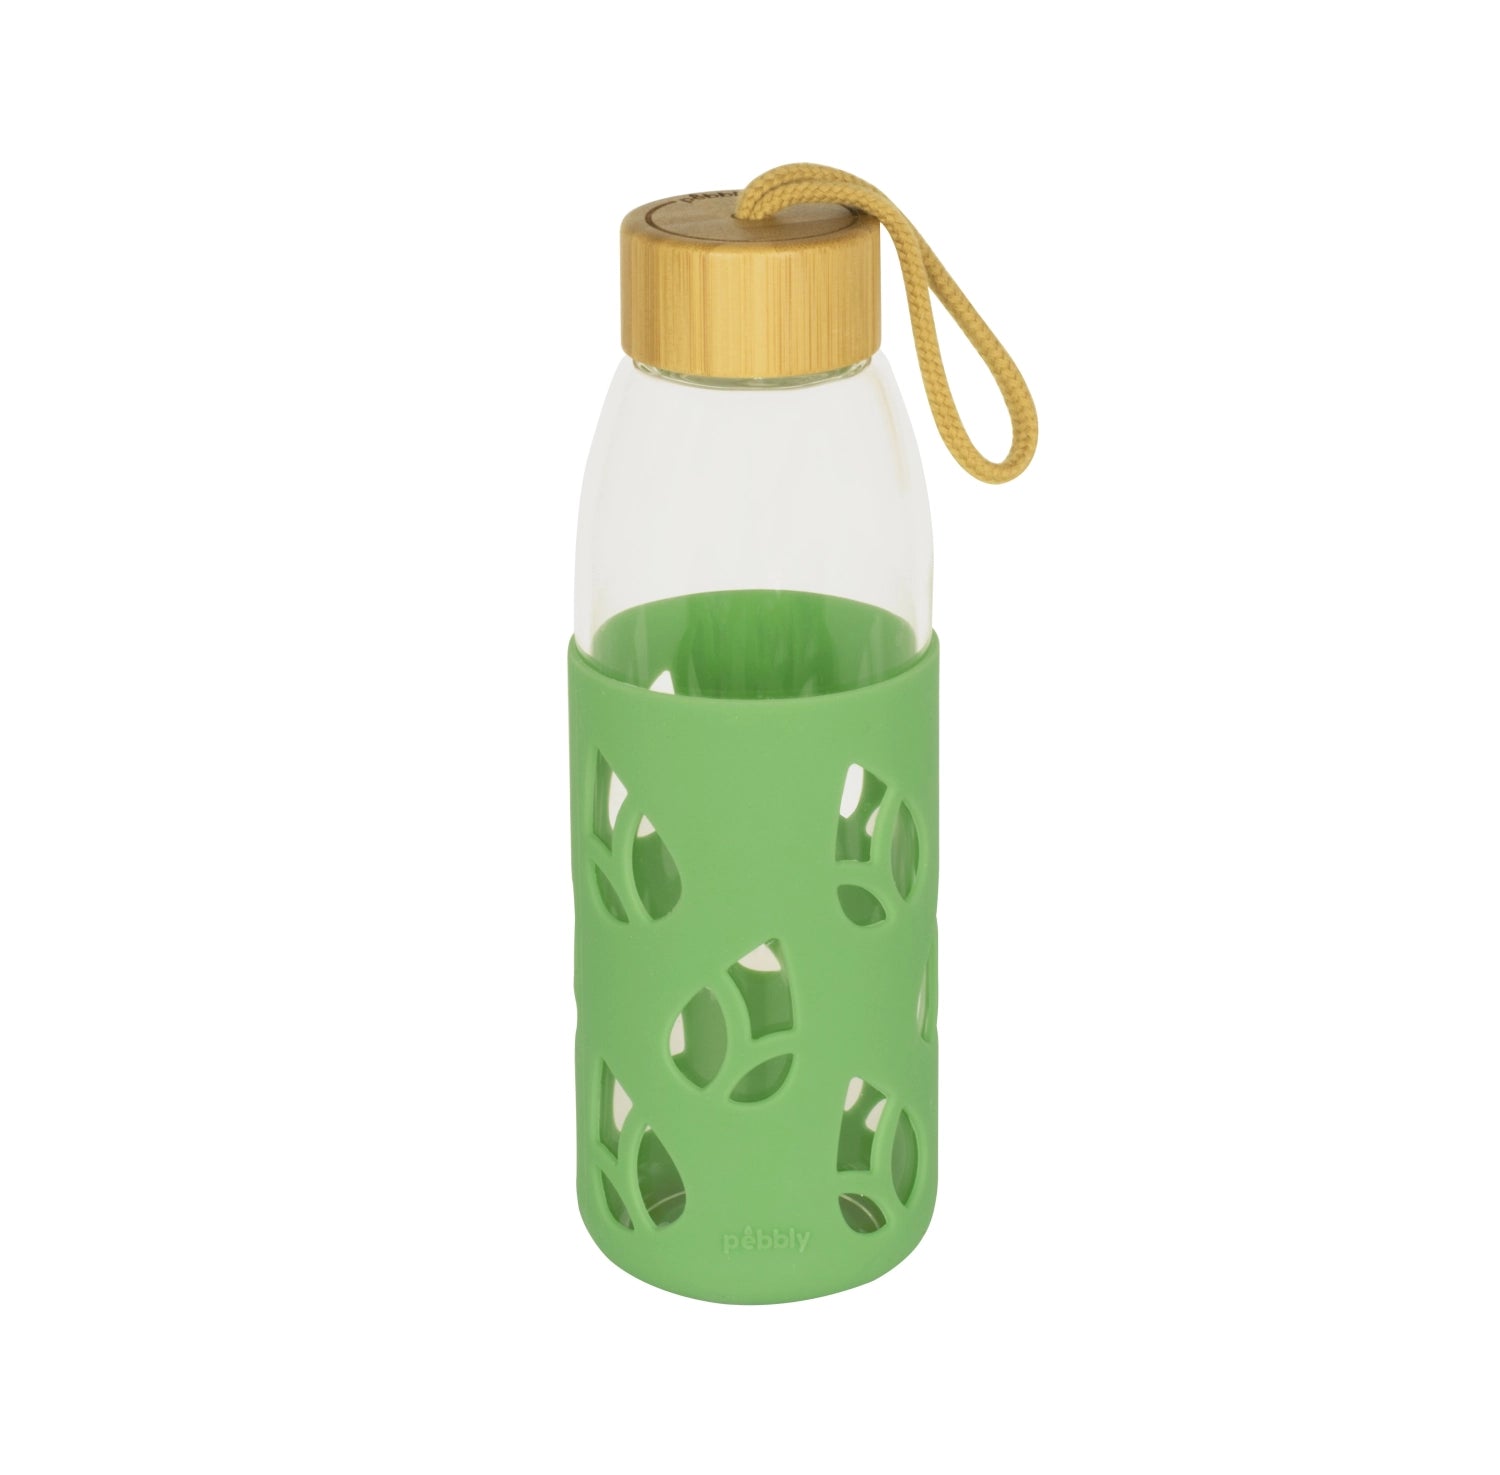 Pebbly Glasflasche mit Bambusdeckel und Silikonärmel 55cl - KAQTU Design